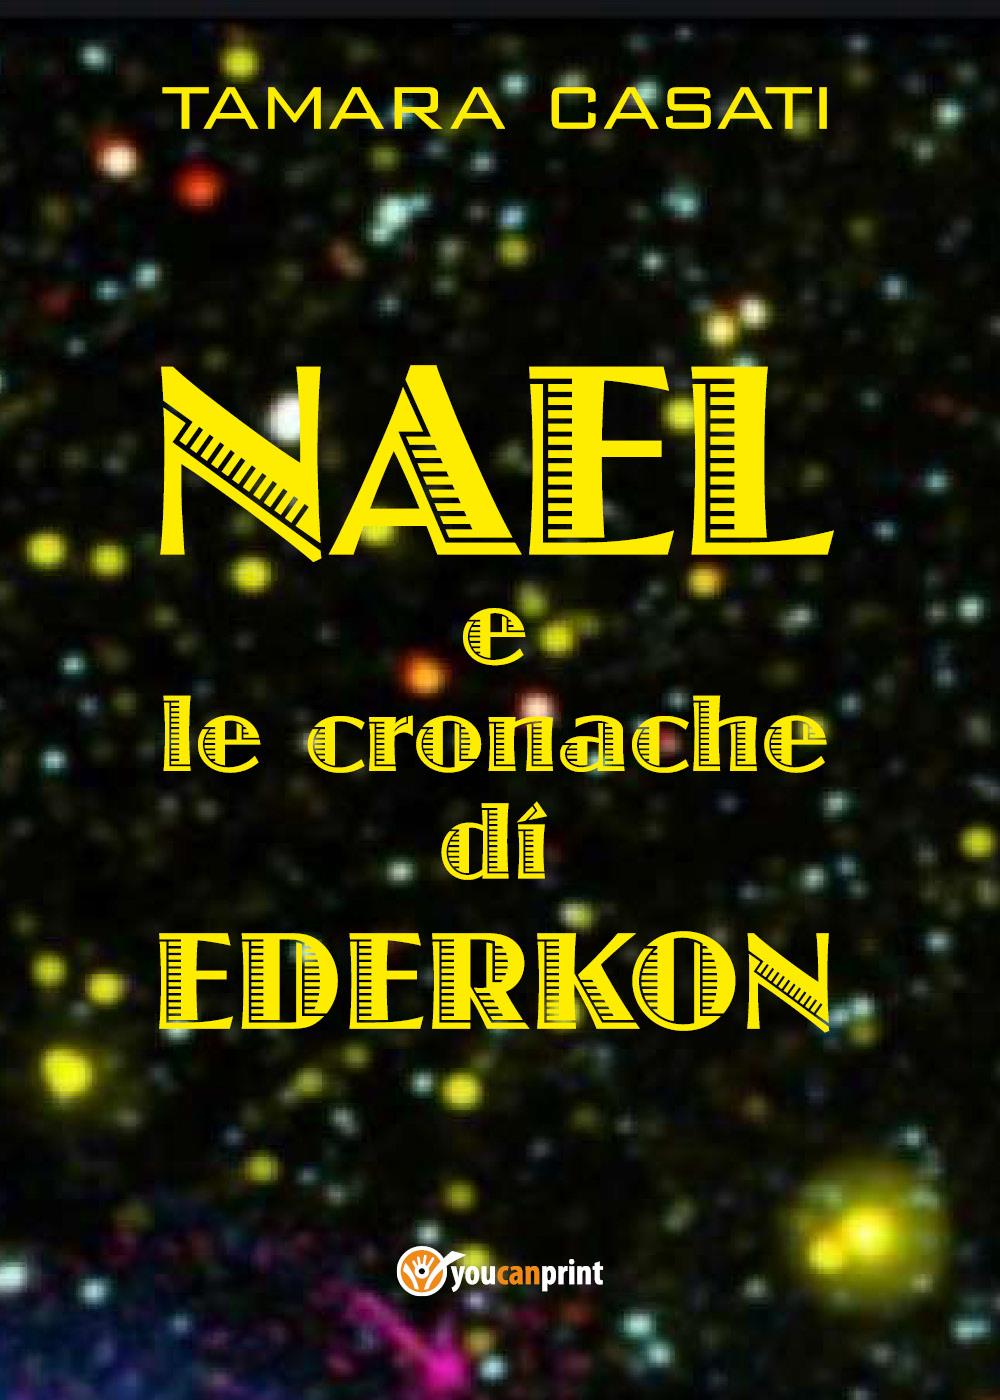 Nael e le cronache di Ederkon